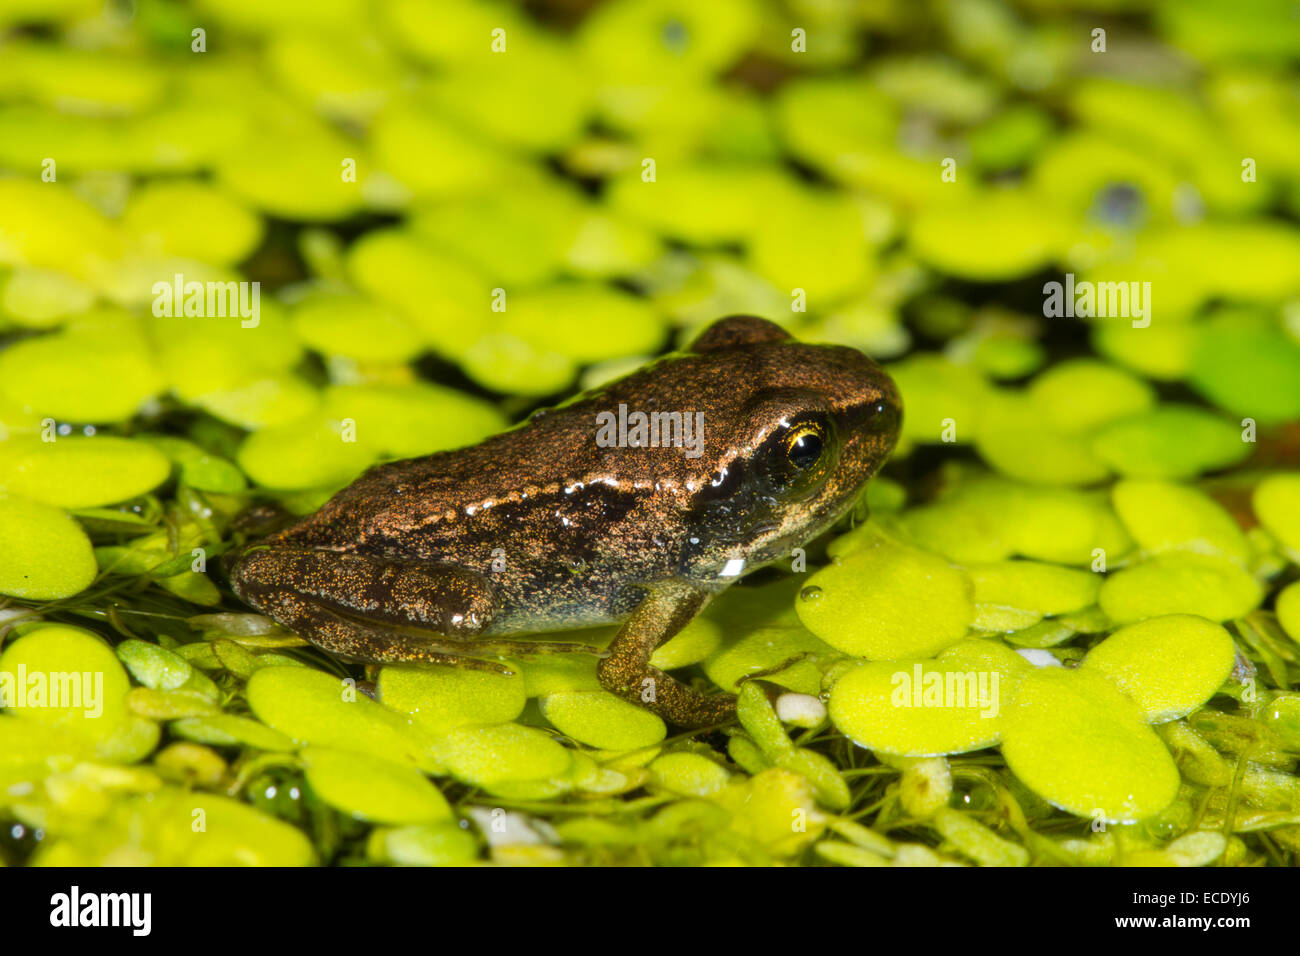 Grenouille Rousse (Rana temporaria) grenouillette, sur la lentille d'eau (Lemna sp.) dans un étang de jardin. Ingelmunster, Sussex, Angleterre. Juillet. Banque D'Images